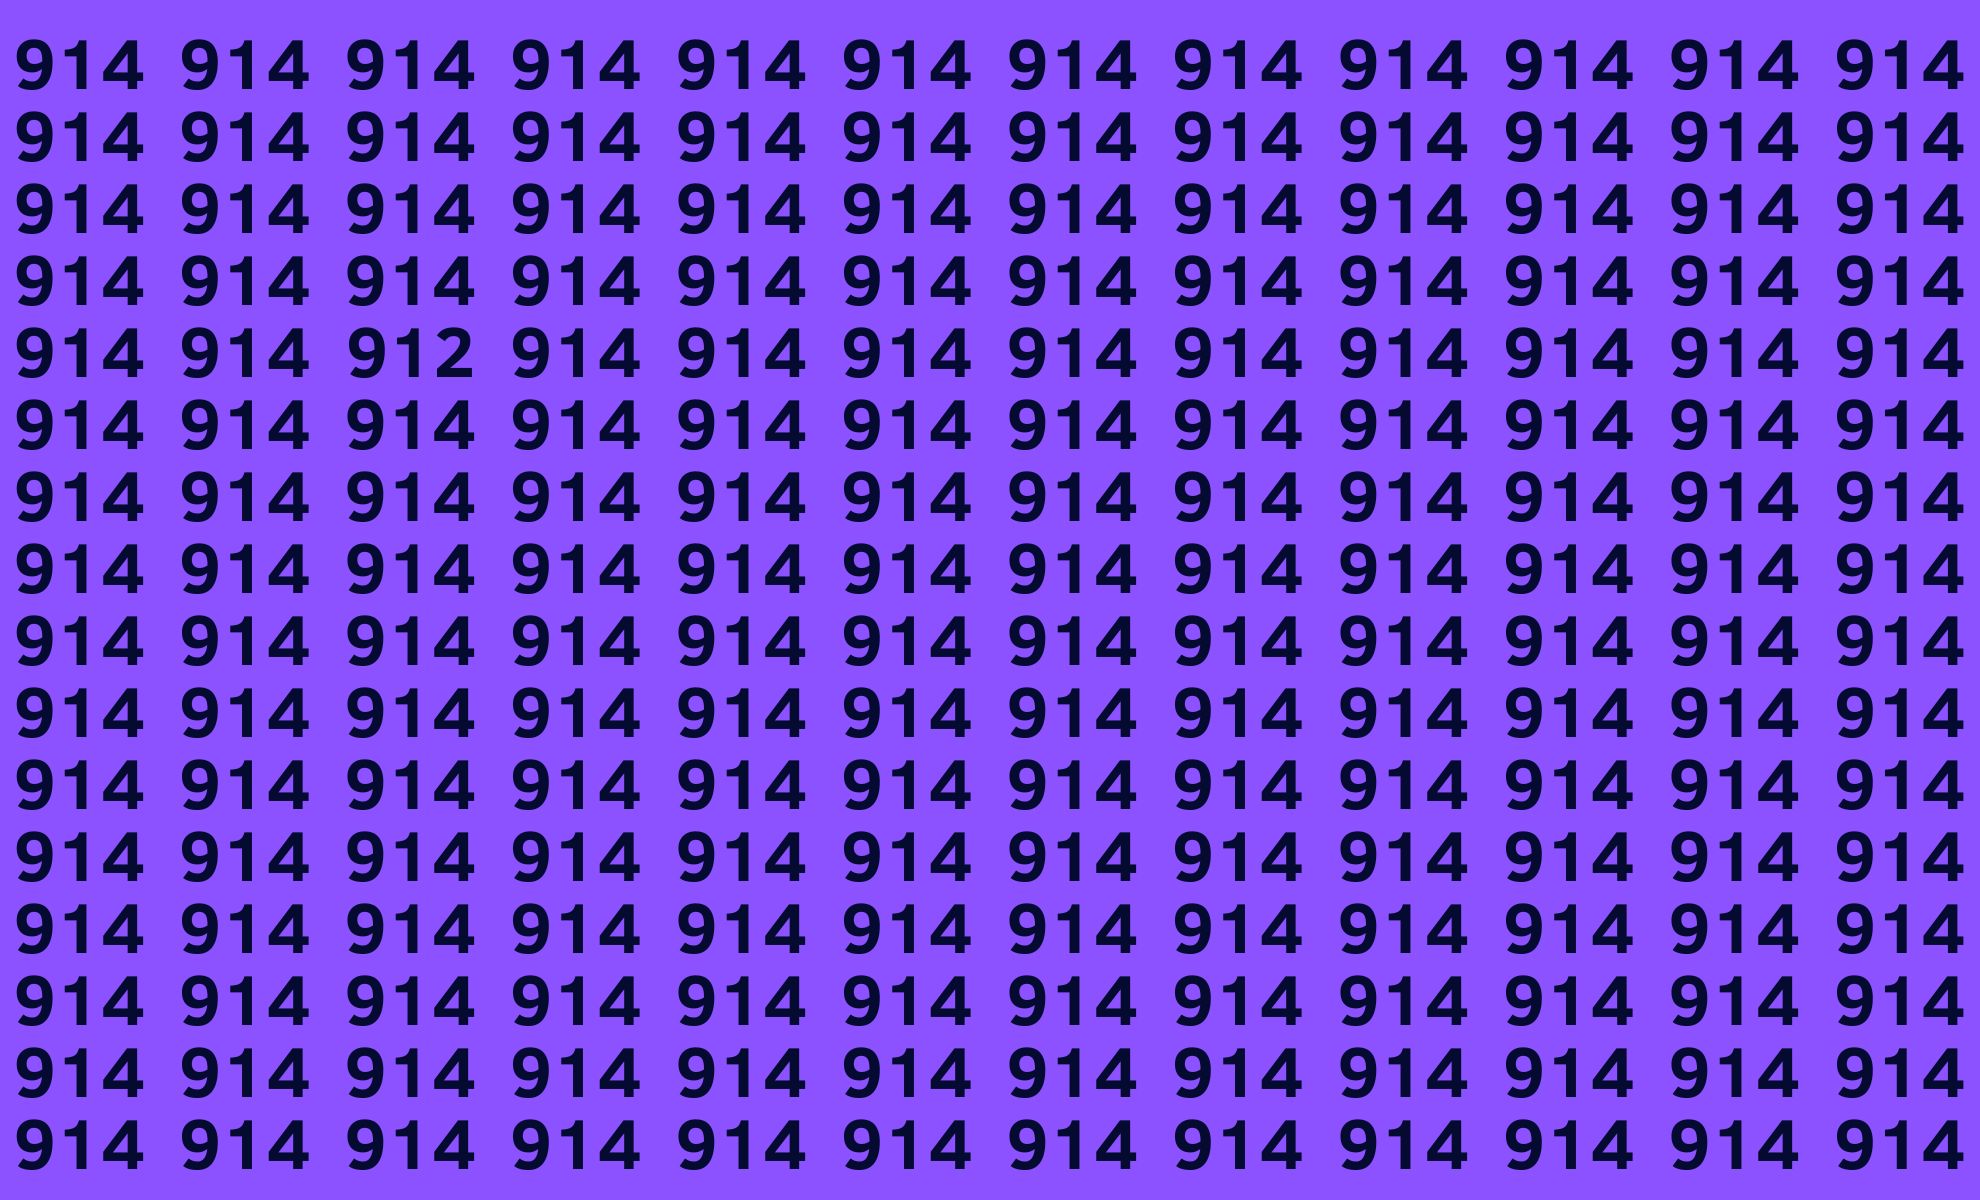 Pouvez-vous résoudre le défi de l'intrus ? Trouvez le nombre différent de 914 en moins de 15 secondes !